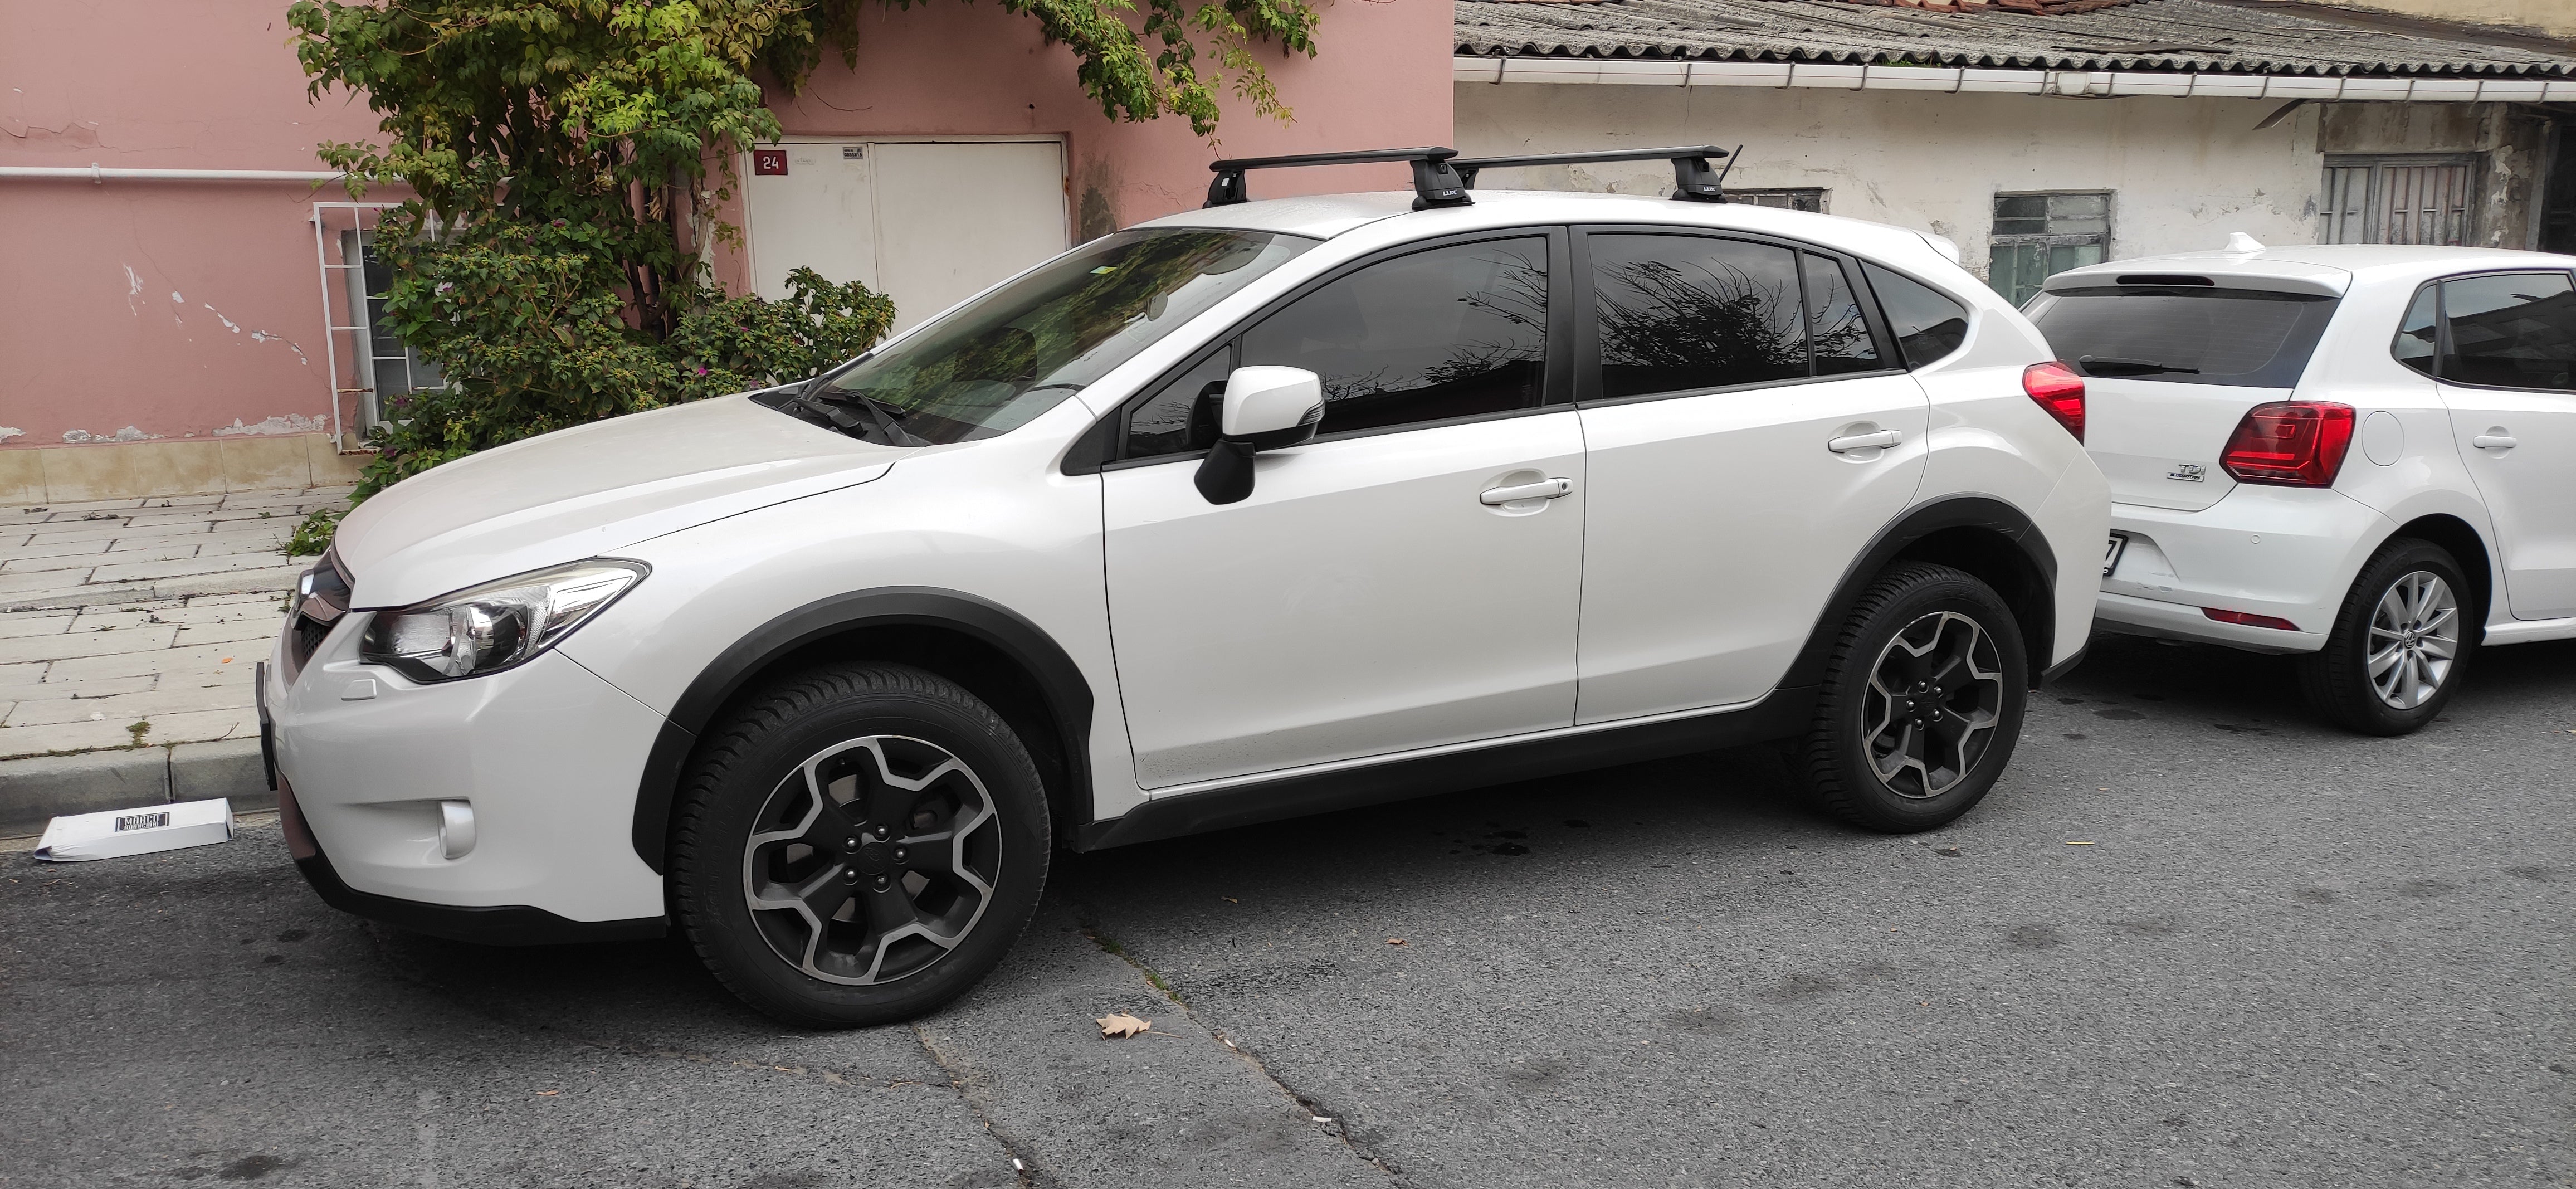 Subaru Impreza WRX Premium 2008-2014 Tavan Ara Atkısı Tavan Sistemleri Siyah